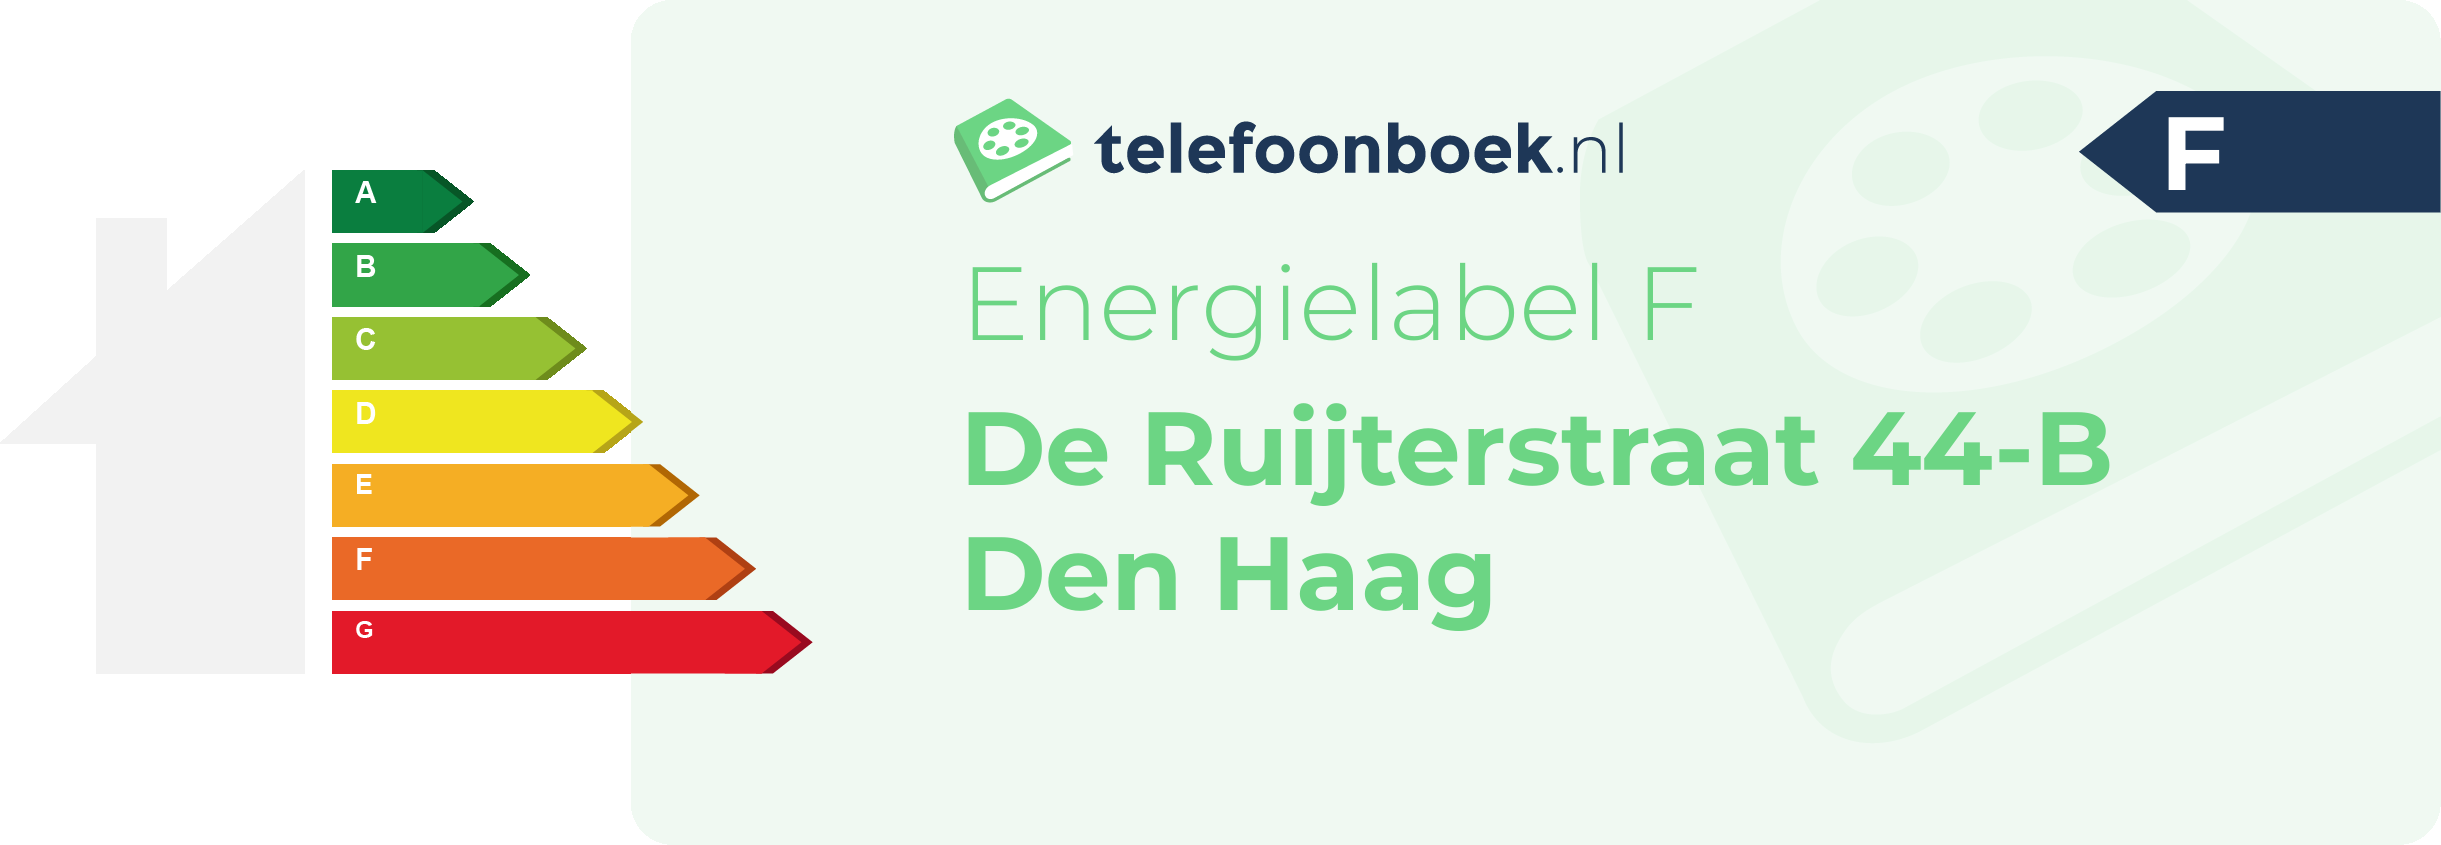 Energielabel De Ruijterstraat 44-B Den Haag